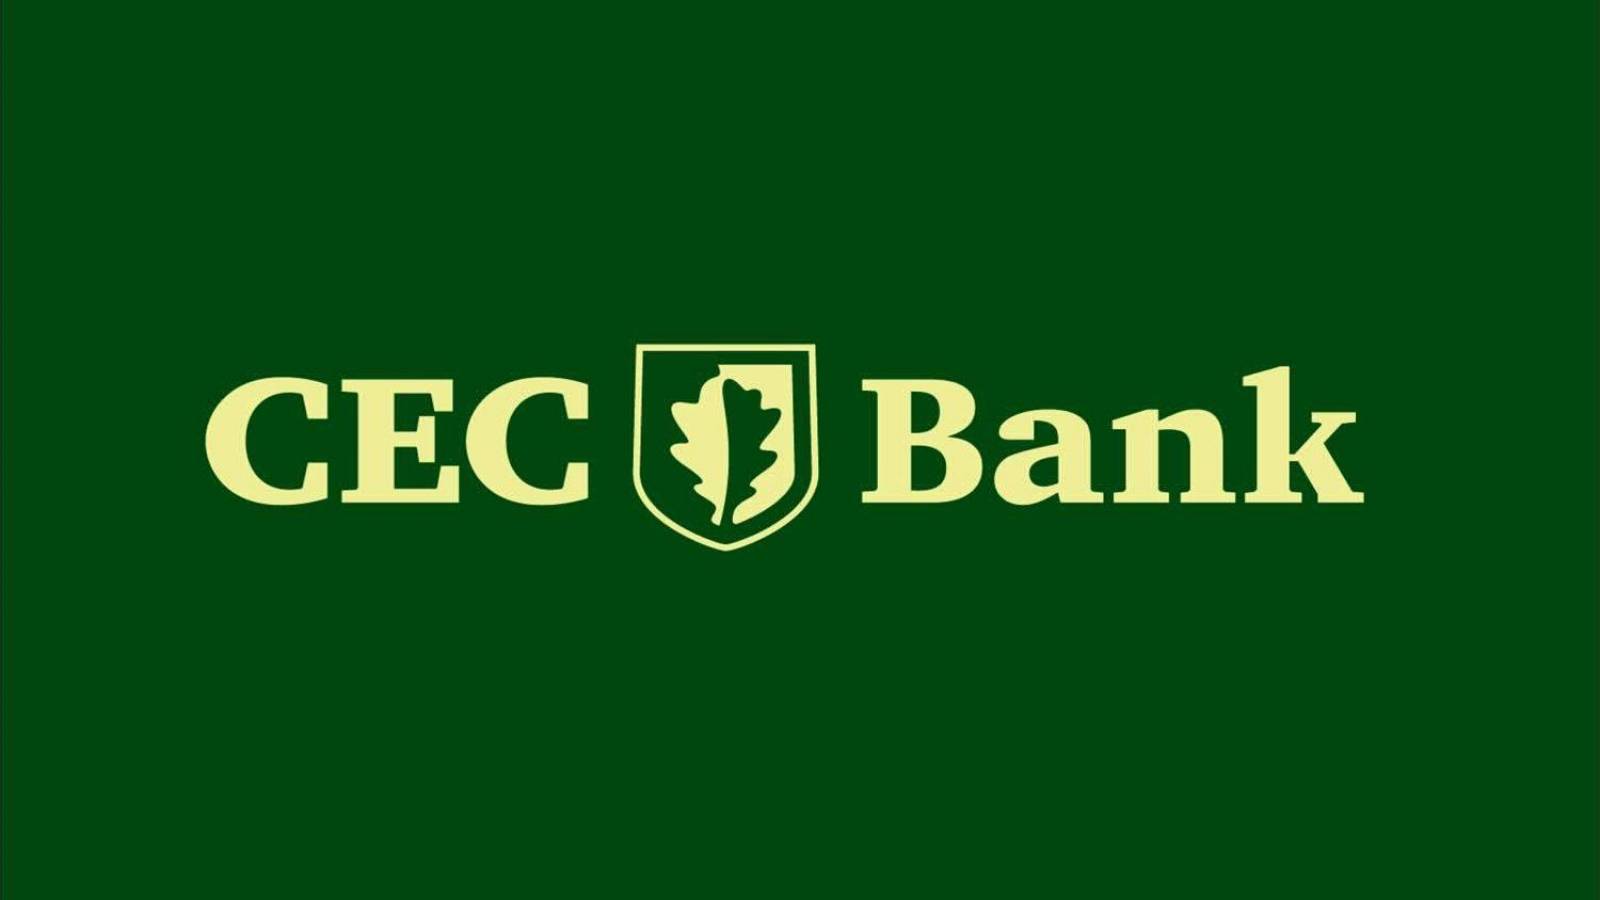 CEC Bank säkerhet